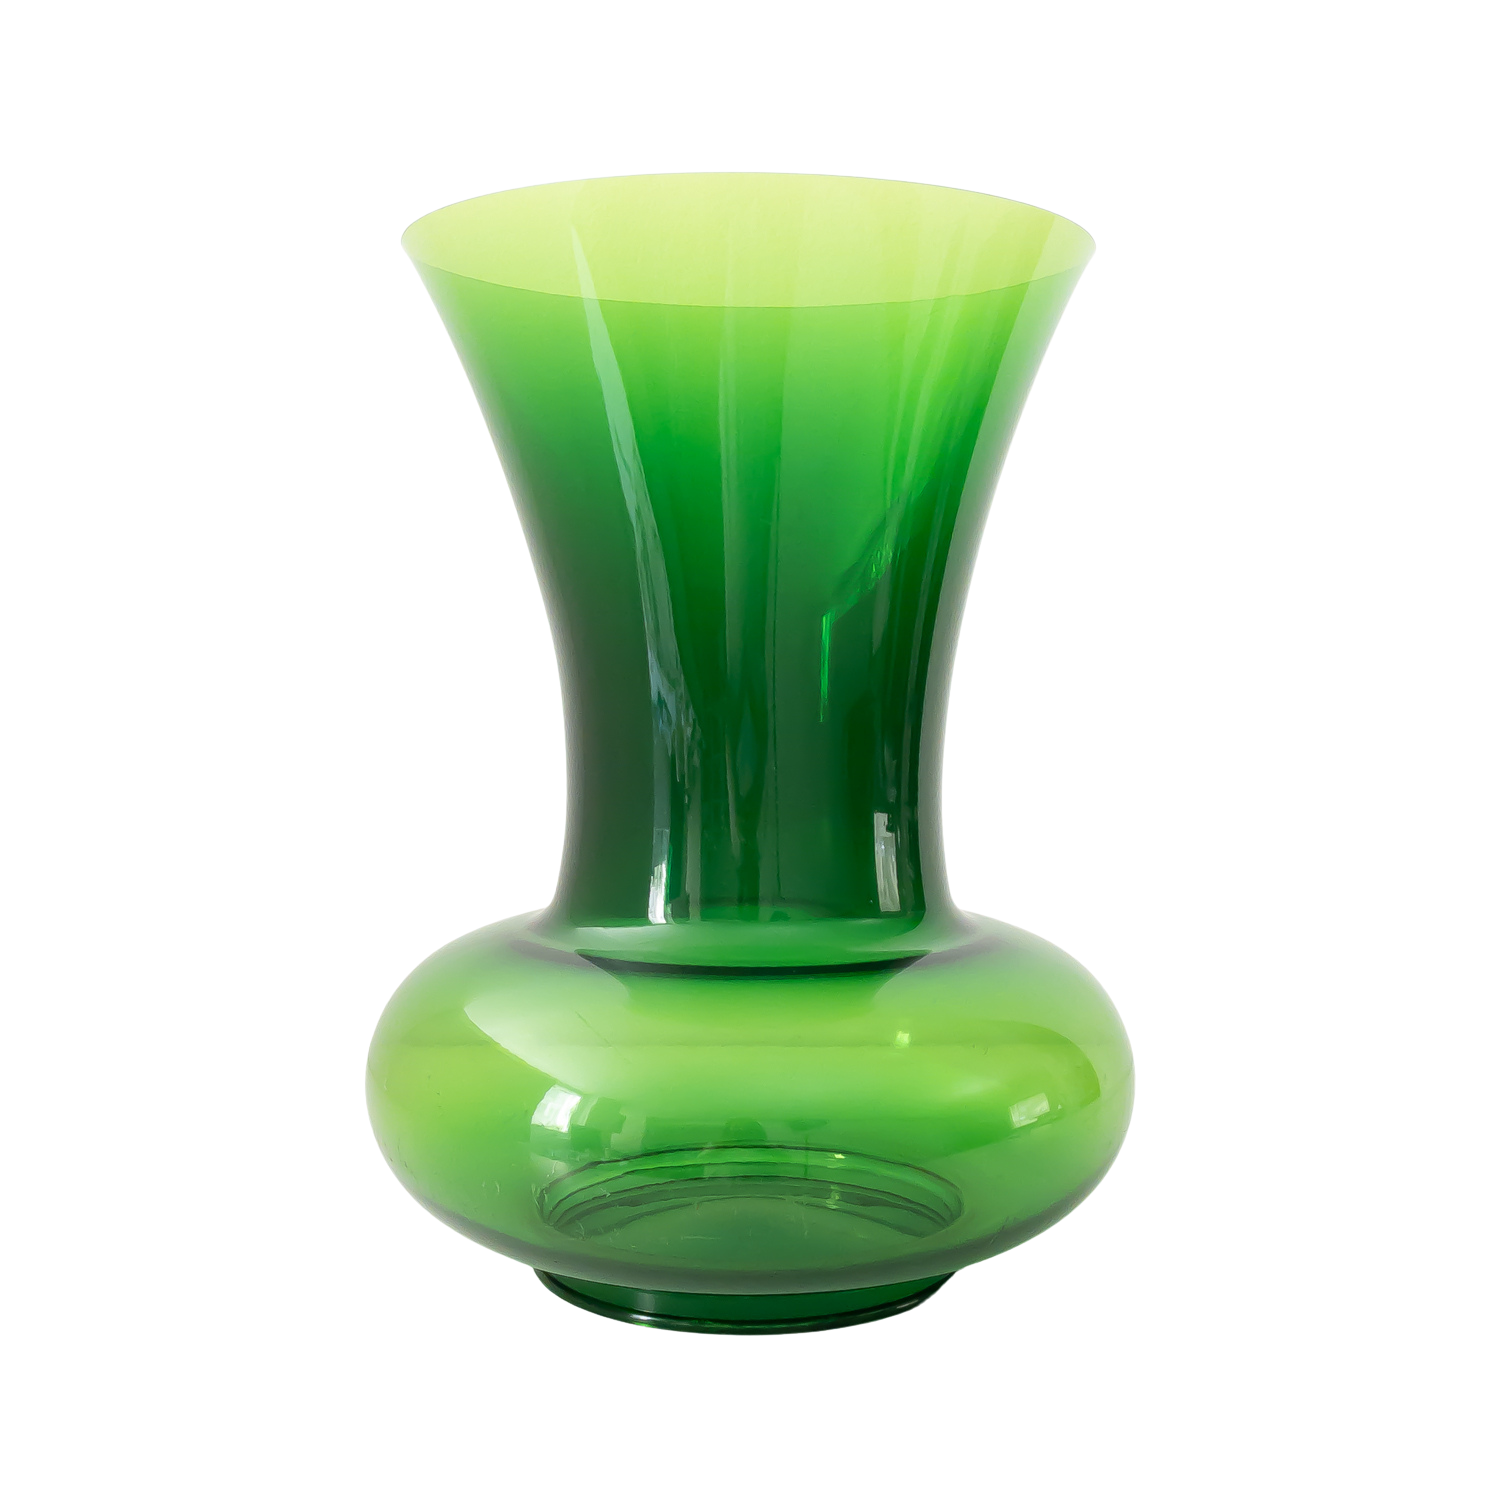 Bohemian vase by Philippe Starck for Kartell